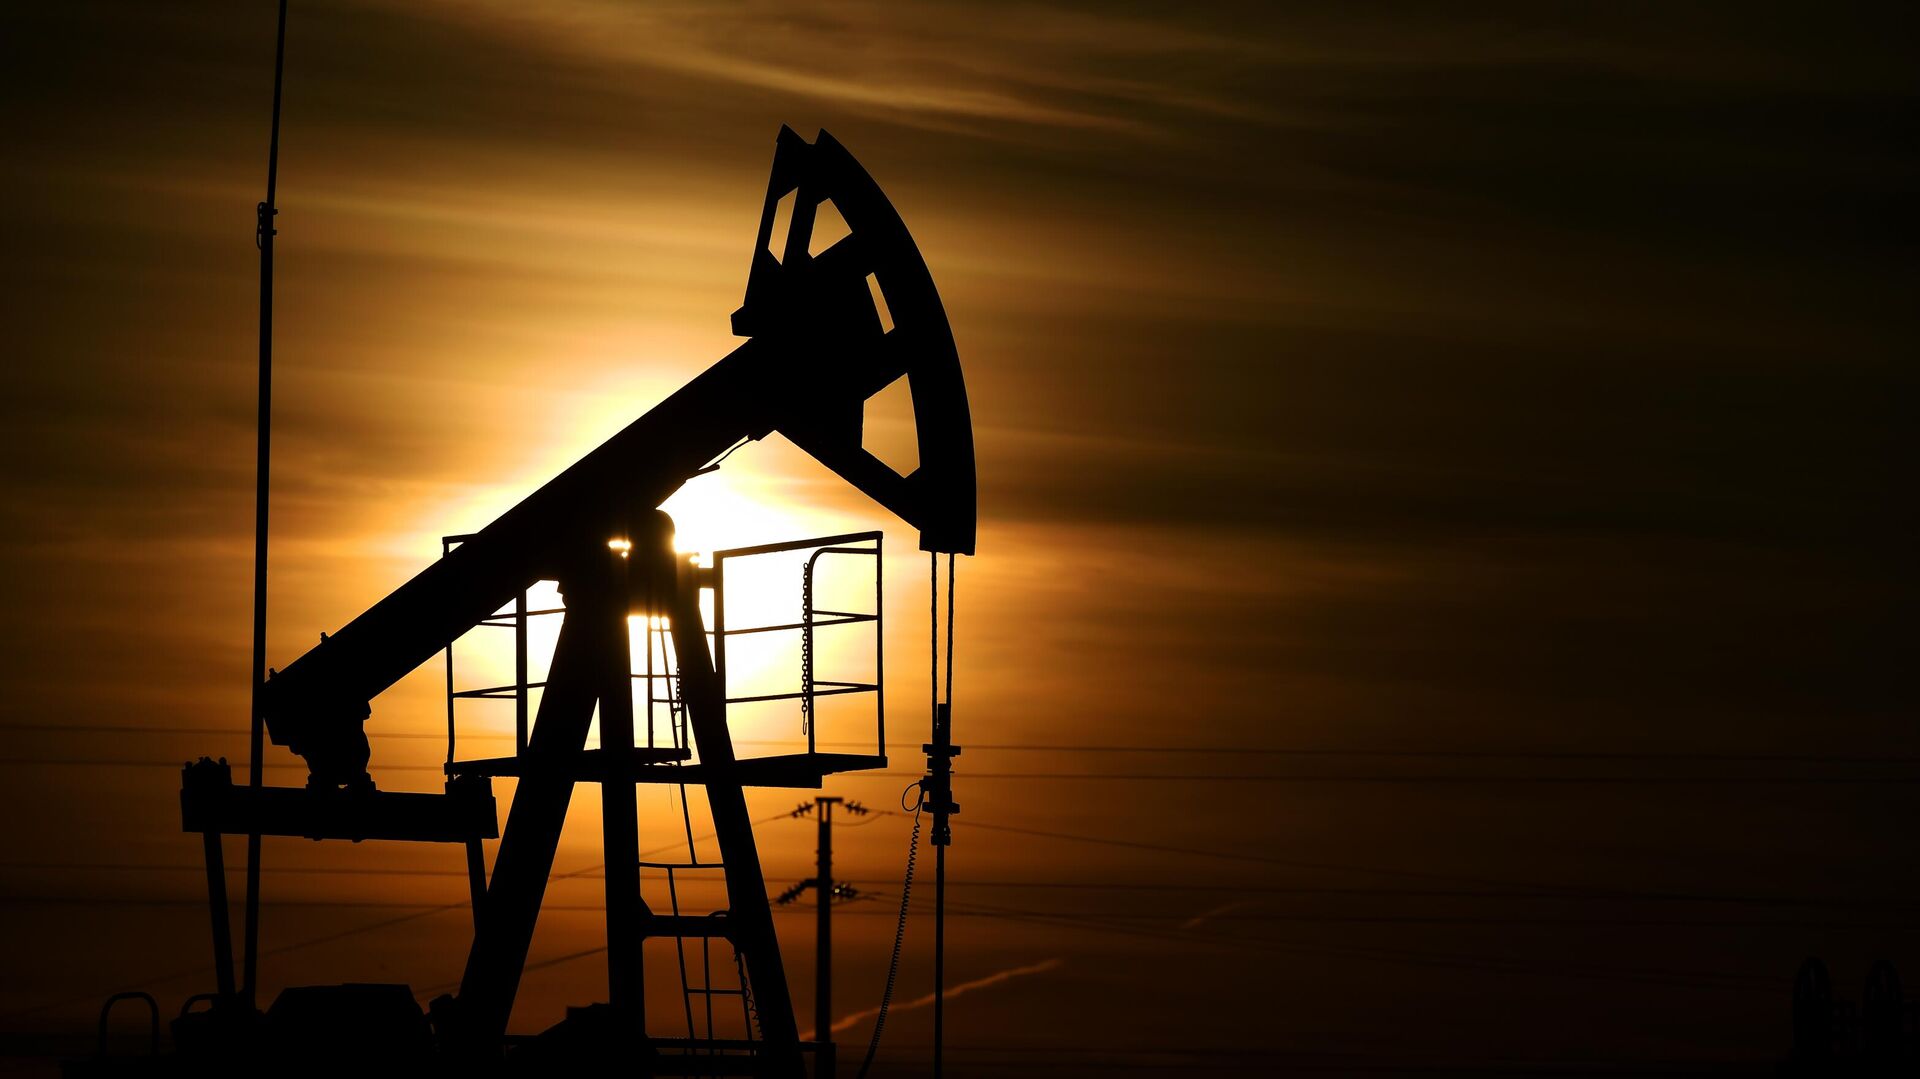 Цены на нефть восстановились более чем на два процента